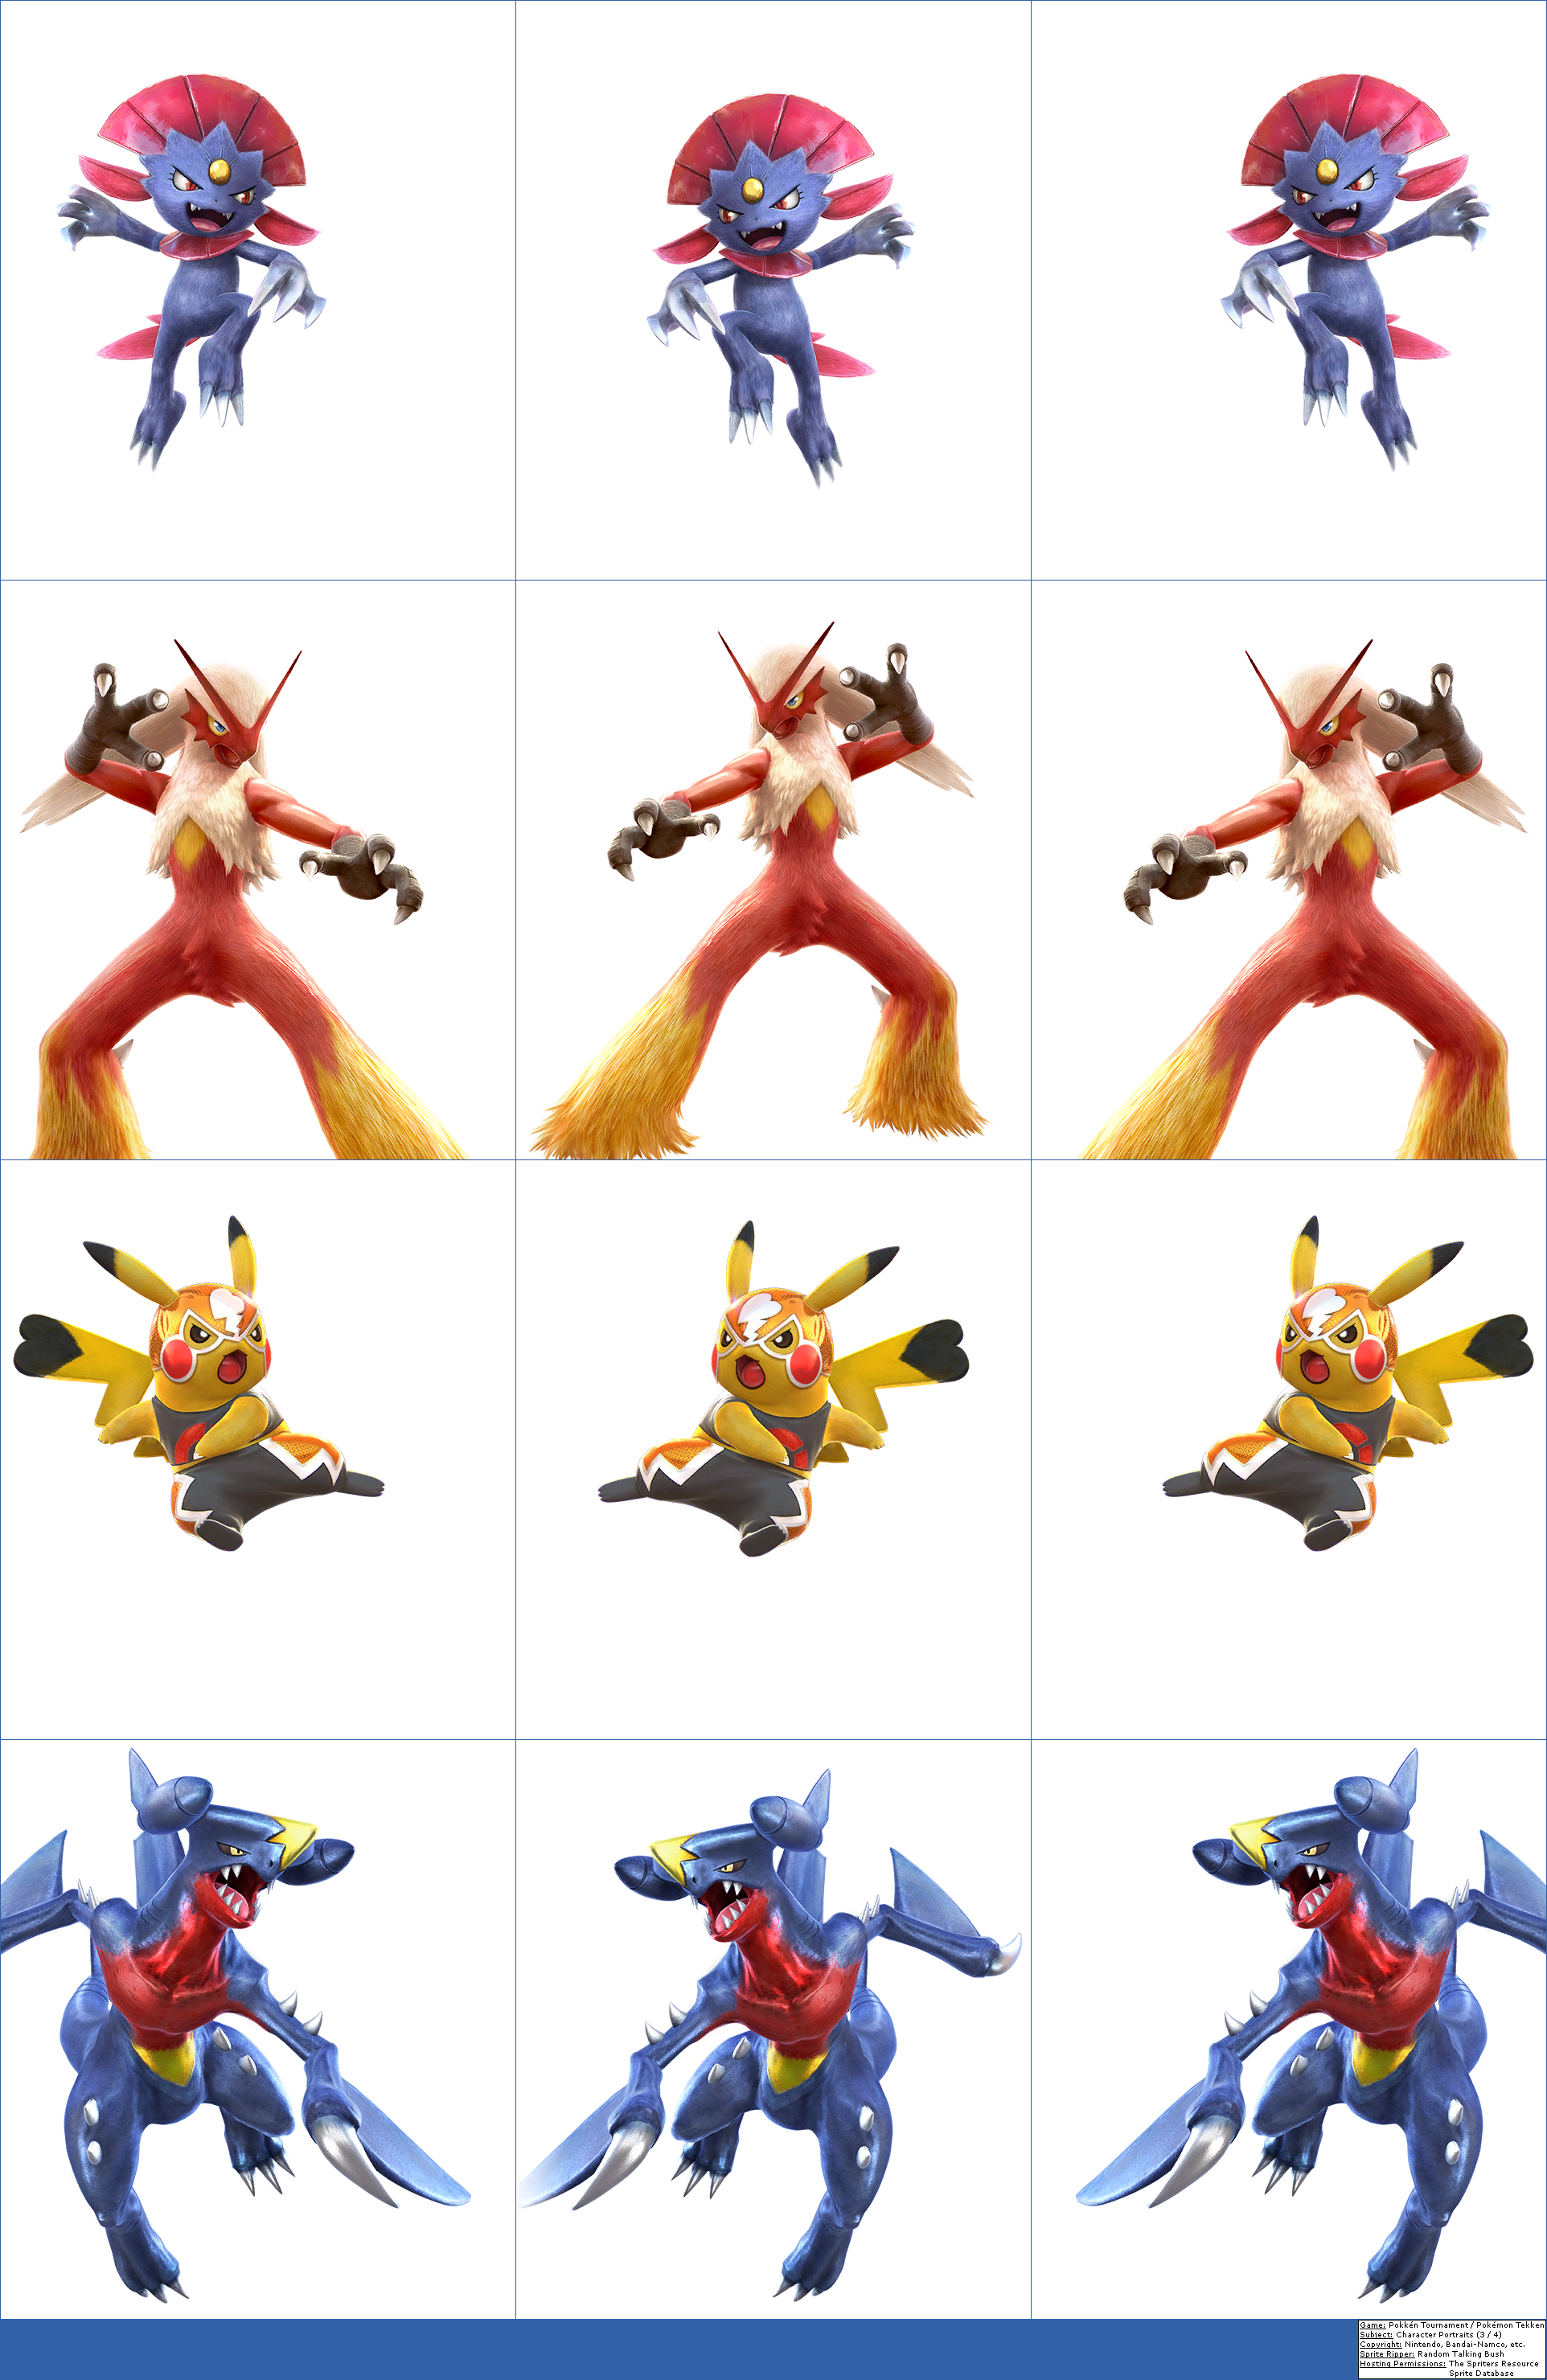 Pokkén Tournament / Pokémon Tekken - Character Portraits (3 / 4)